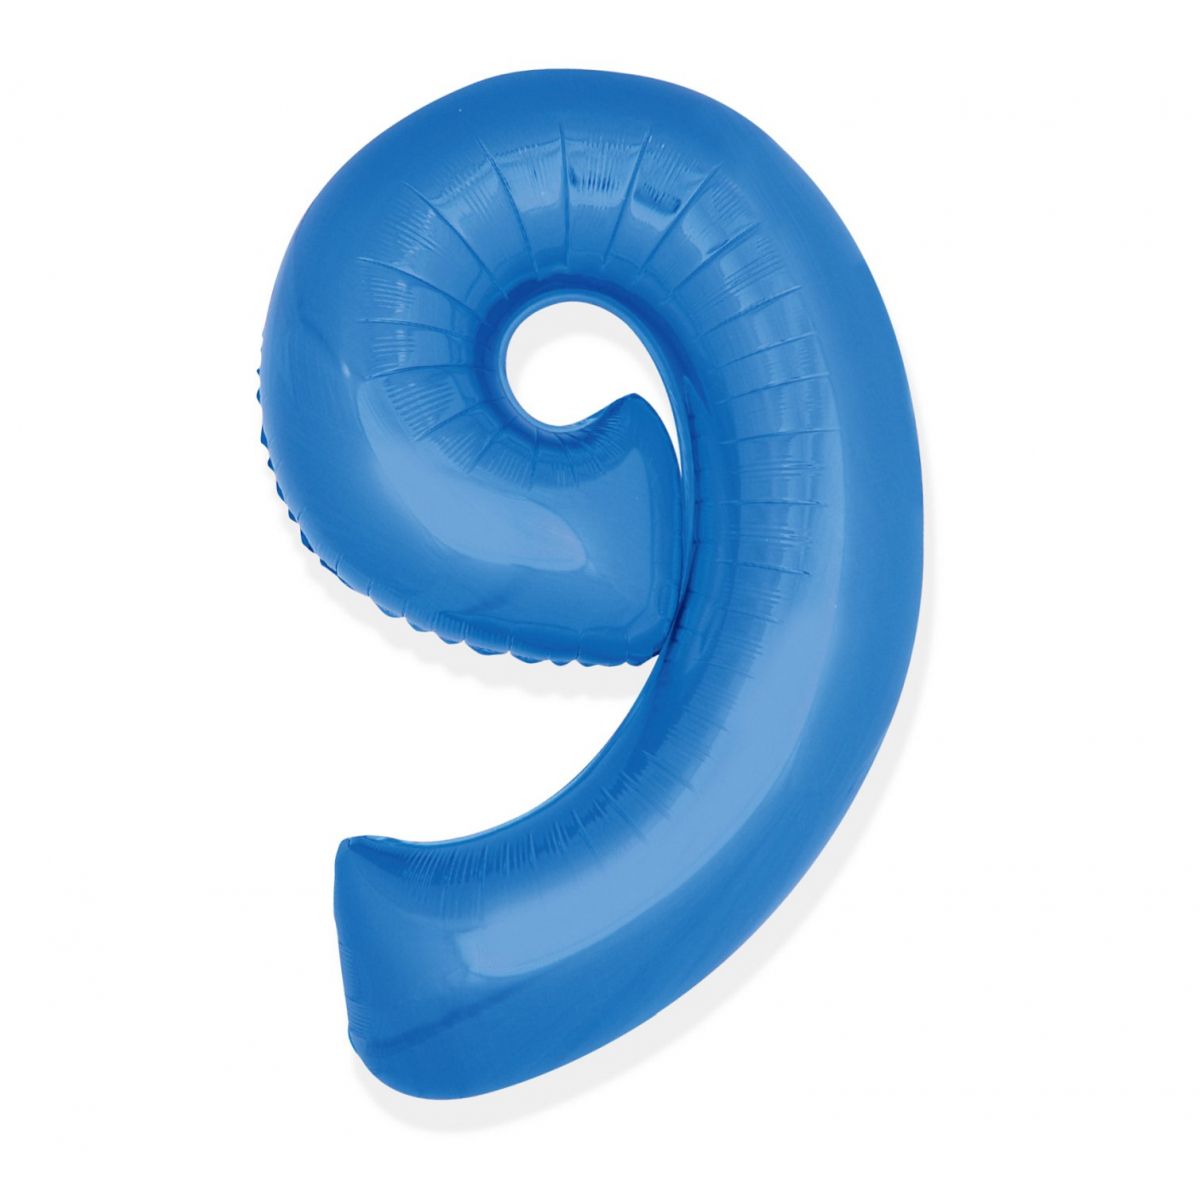 Balon foliowy Godan cyfra 9 niebieski 35 cm (FG-C35N9)